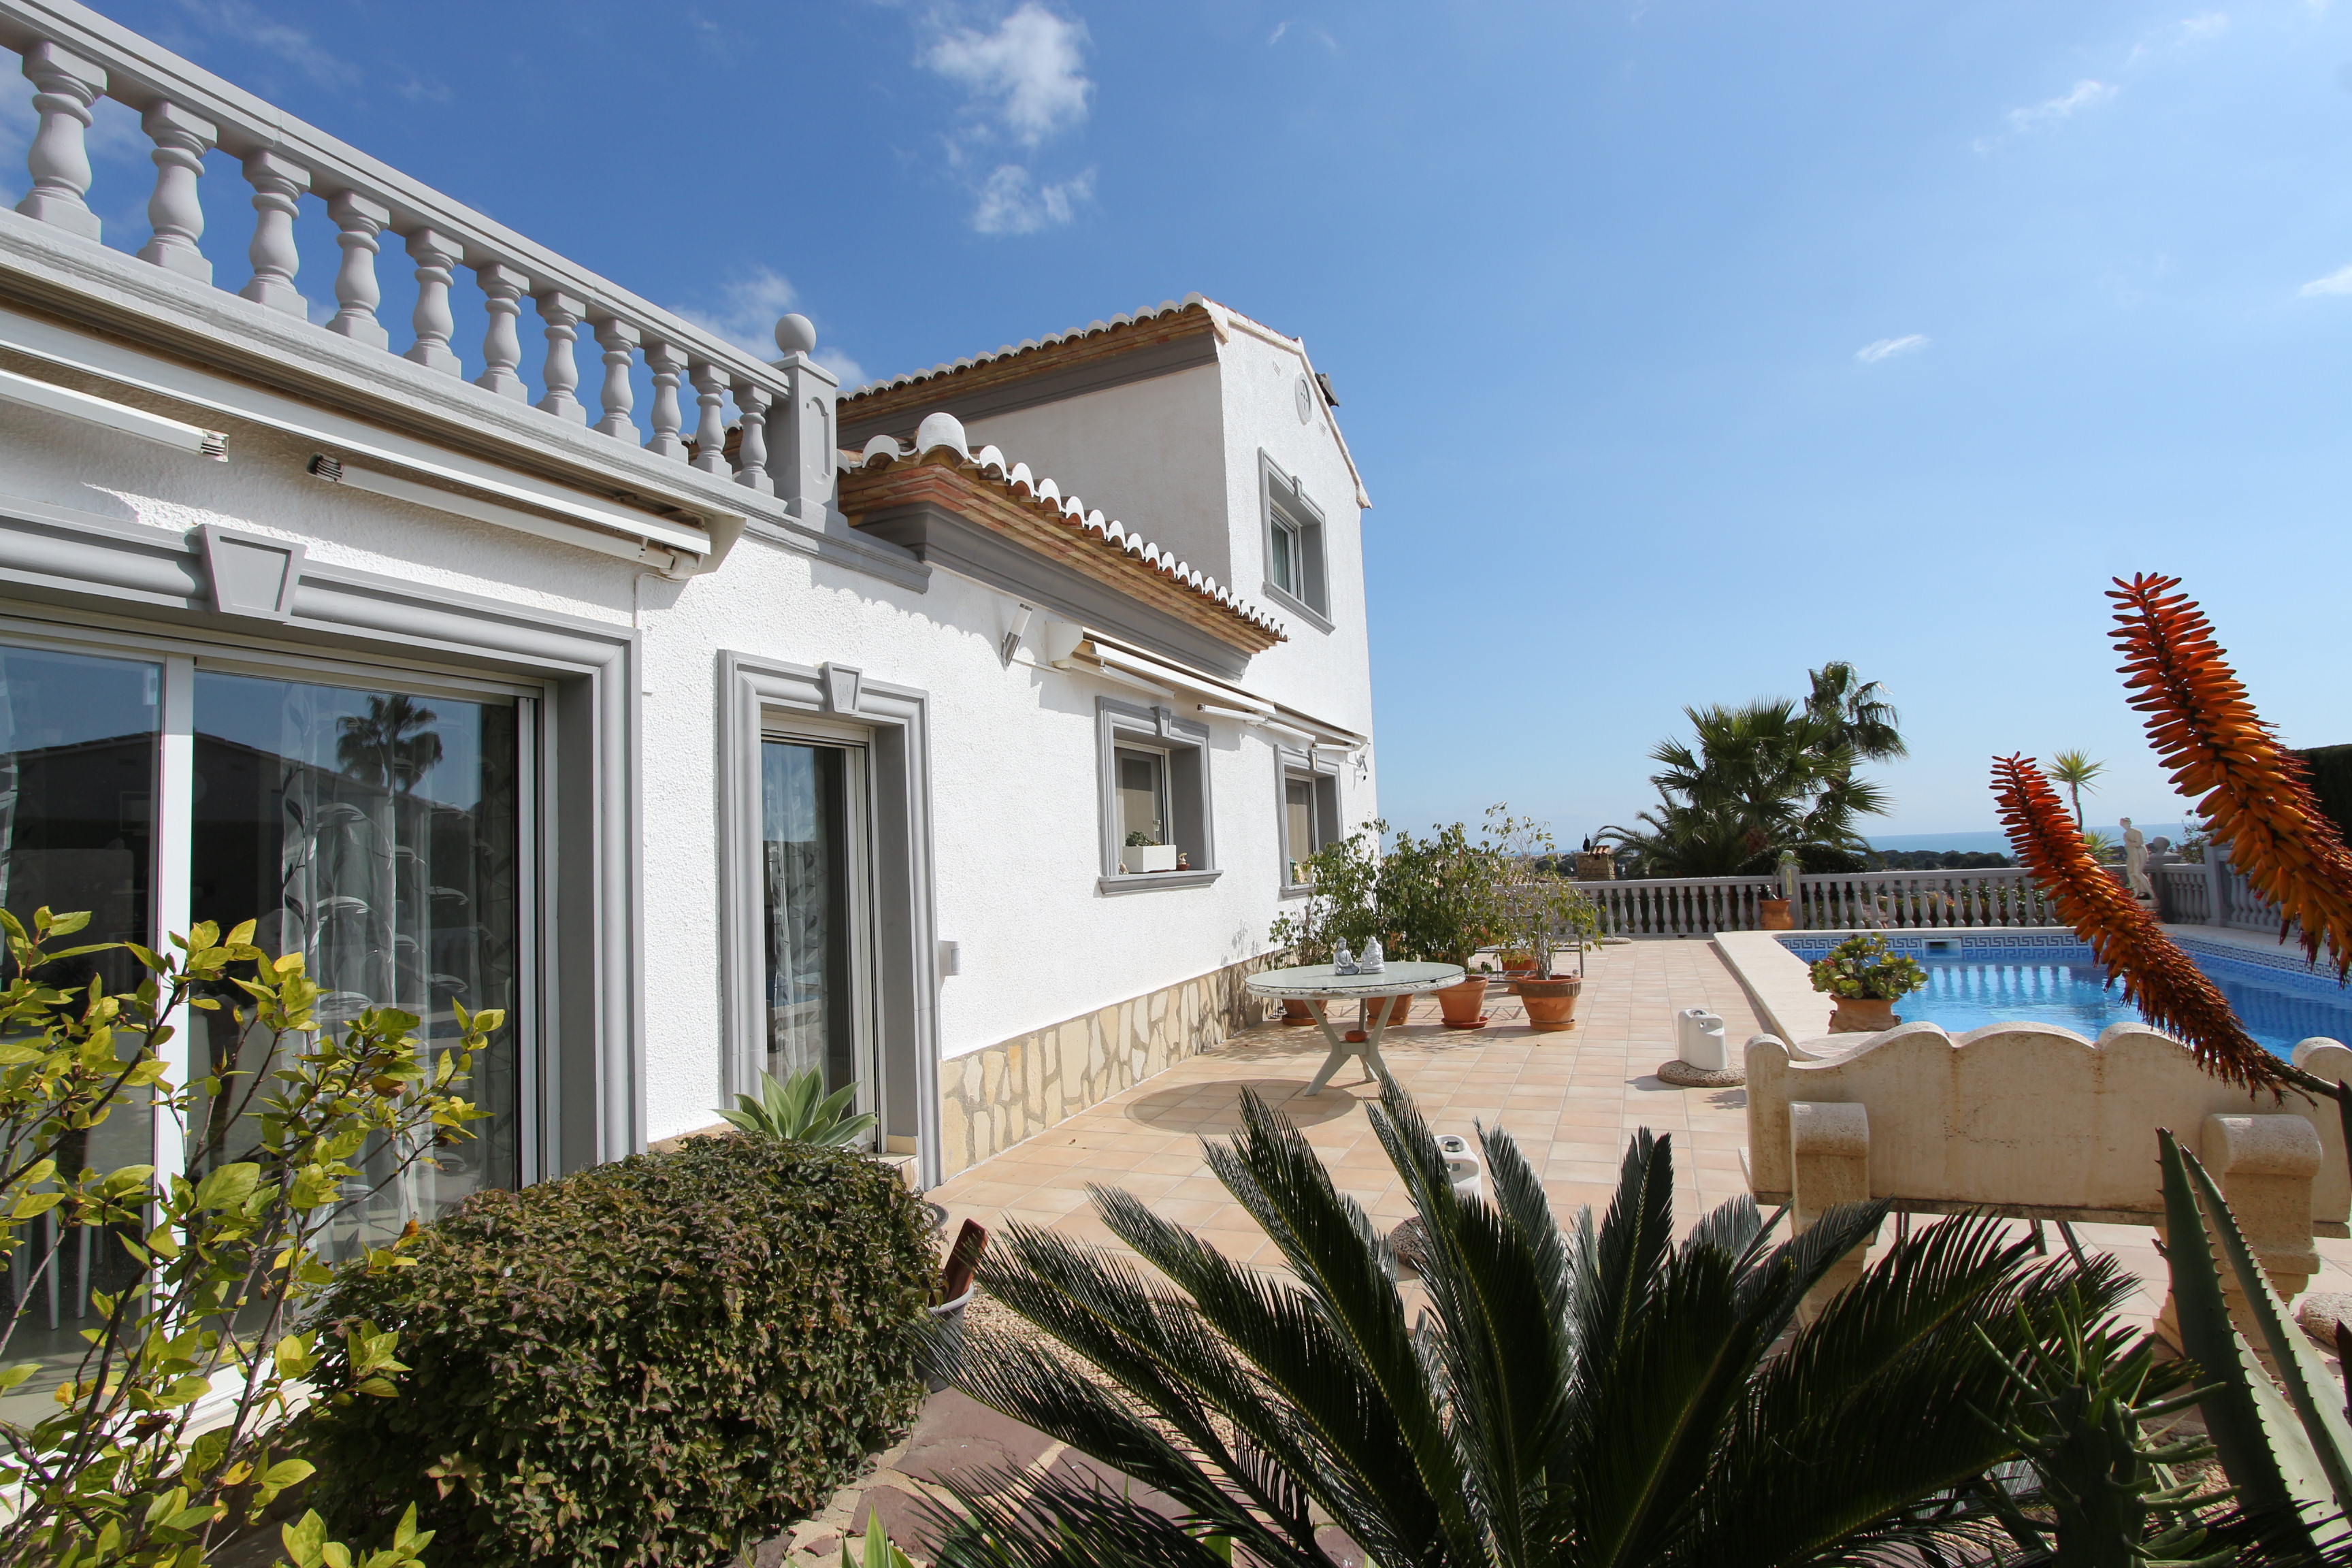 Maravillosa villa mediterránea con vistas al mar en Calpe. ¡Un sueño hecho realidad!